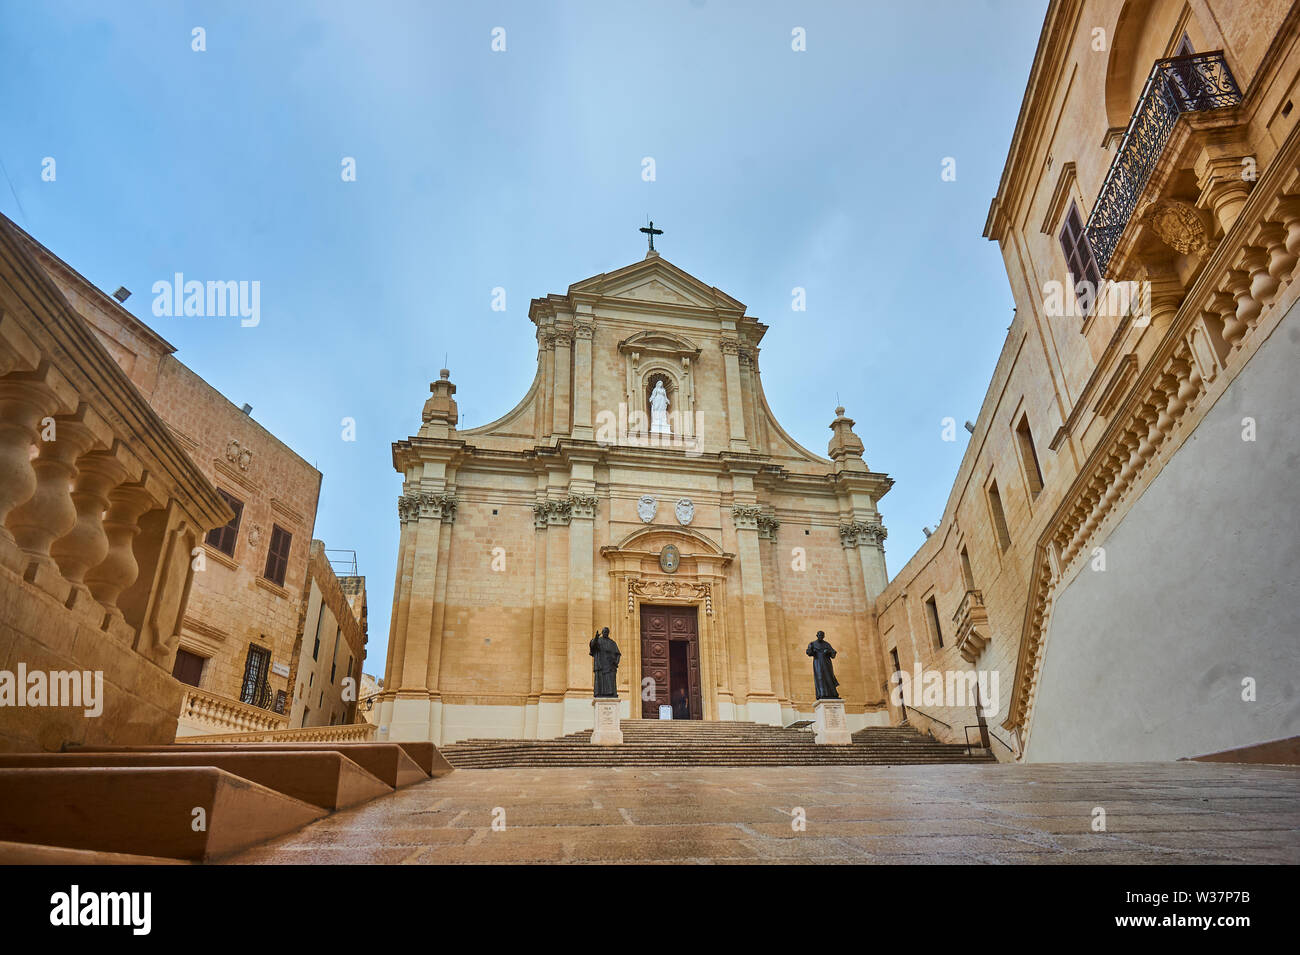 Kathedrale Santa Marija dans der im Mittelalter erbauten Festung Cittadella dans meltesisch Victoria Rabat auf der Insel Gozo zugehörig zu Mata. Banque D'Images